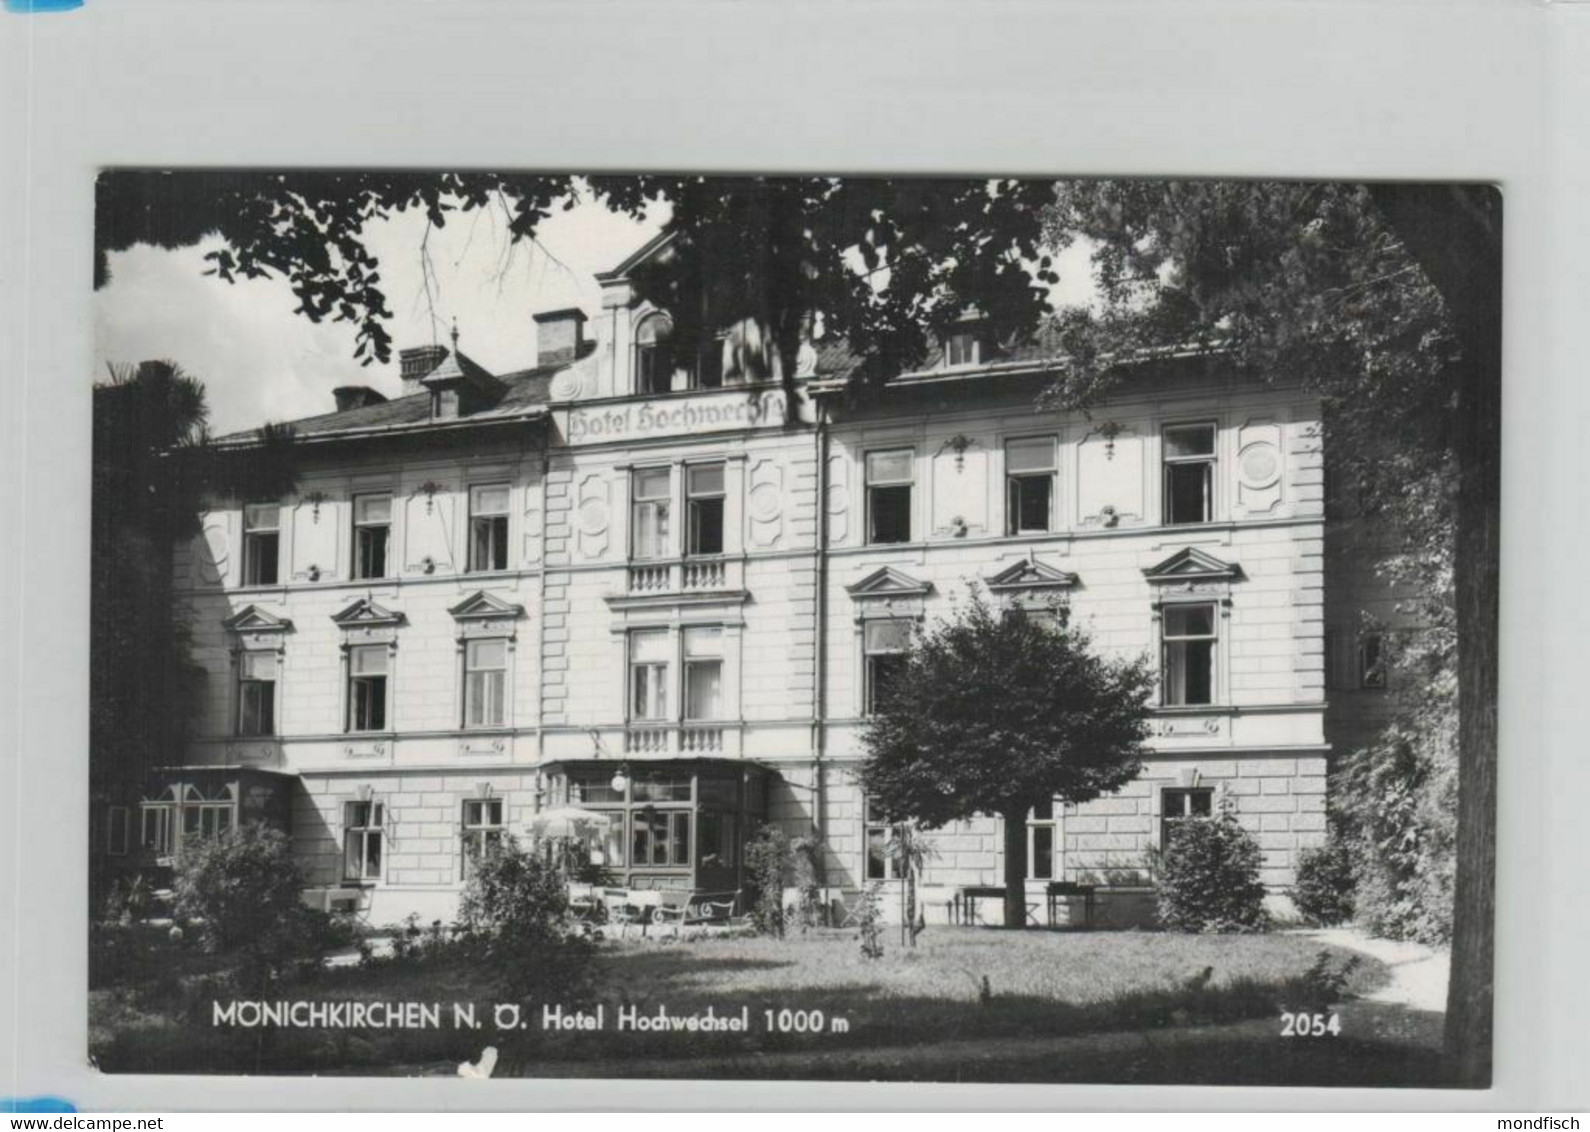 Mönichkirchen 1961 - Hotel Hochwechsel - Wechsel